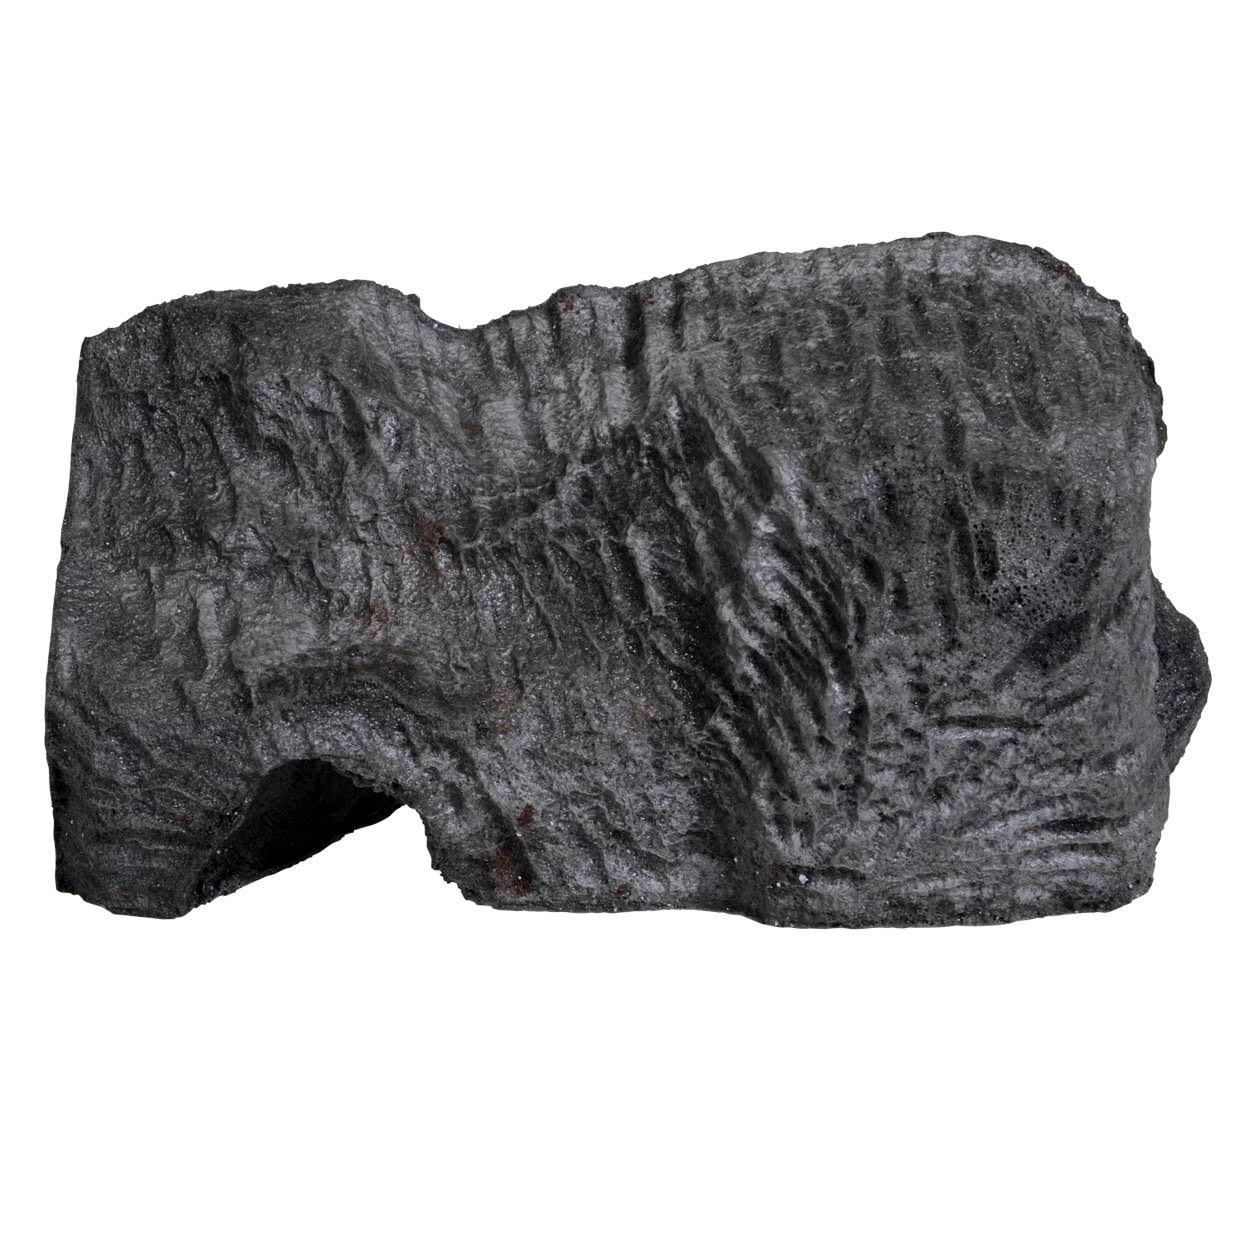 Habi-Scape 37173 Granite Burrow - Large